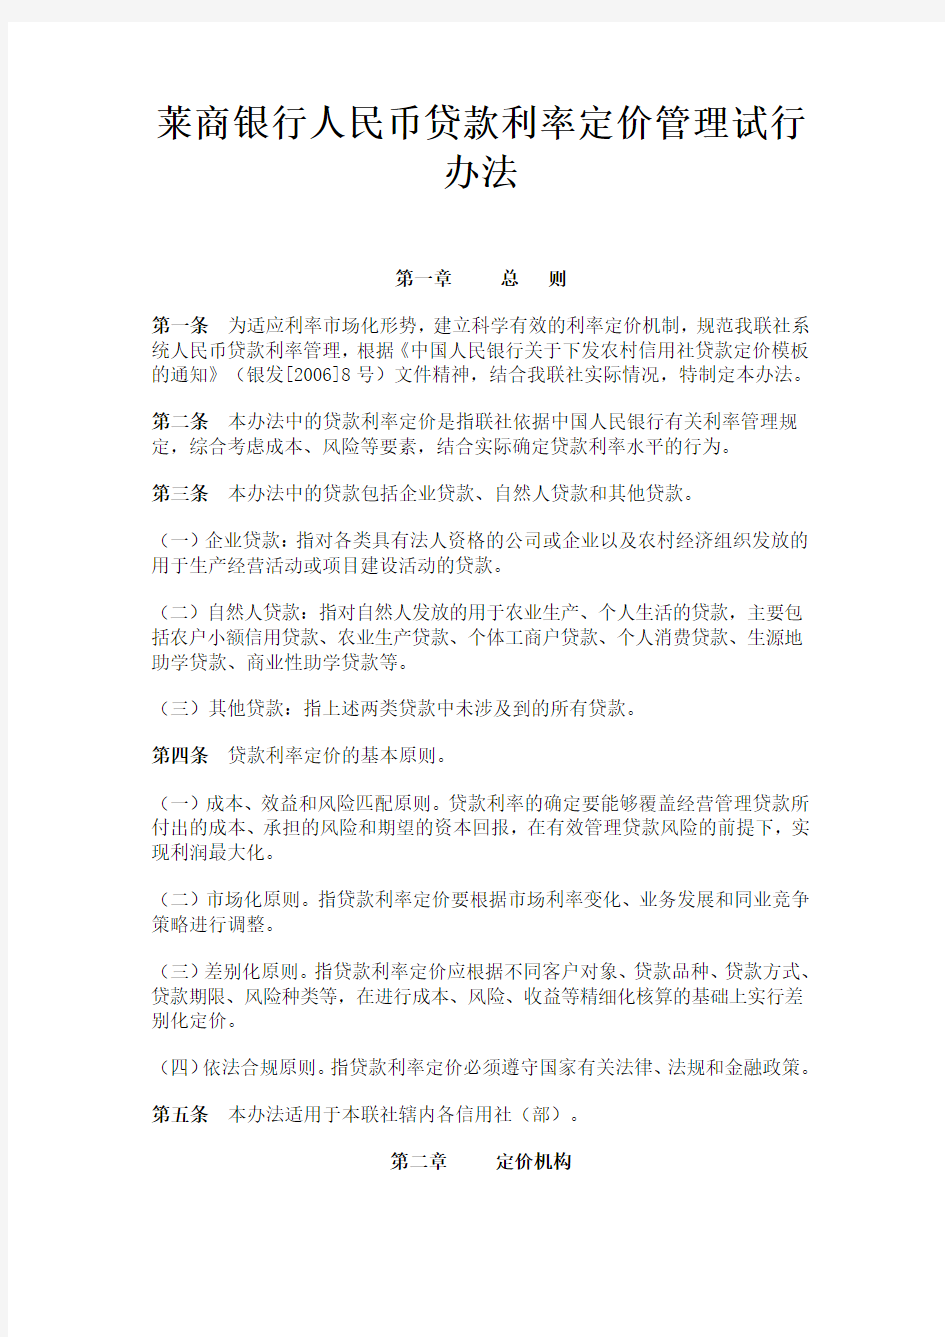 湘乡市农村信用合作联社 人民币贷款利率定价管理试行办法